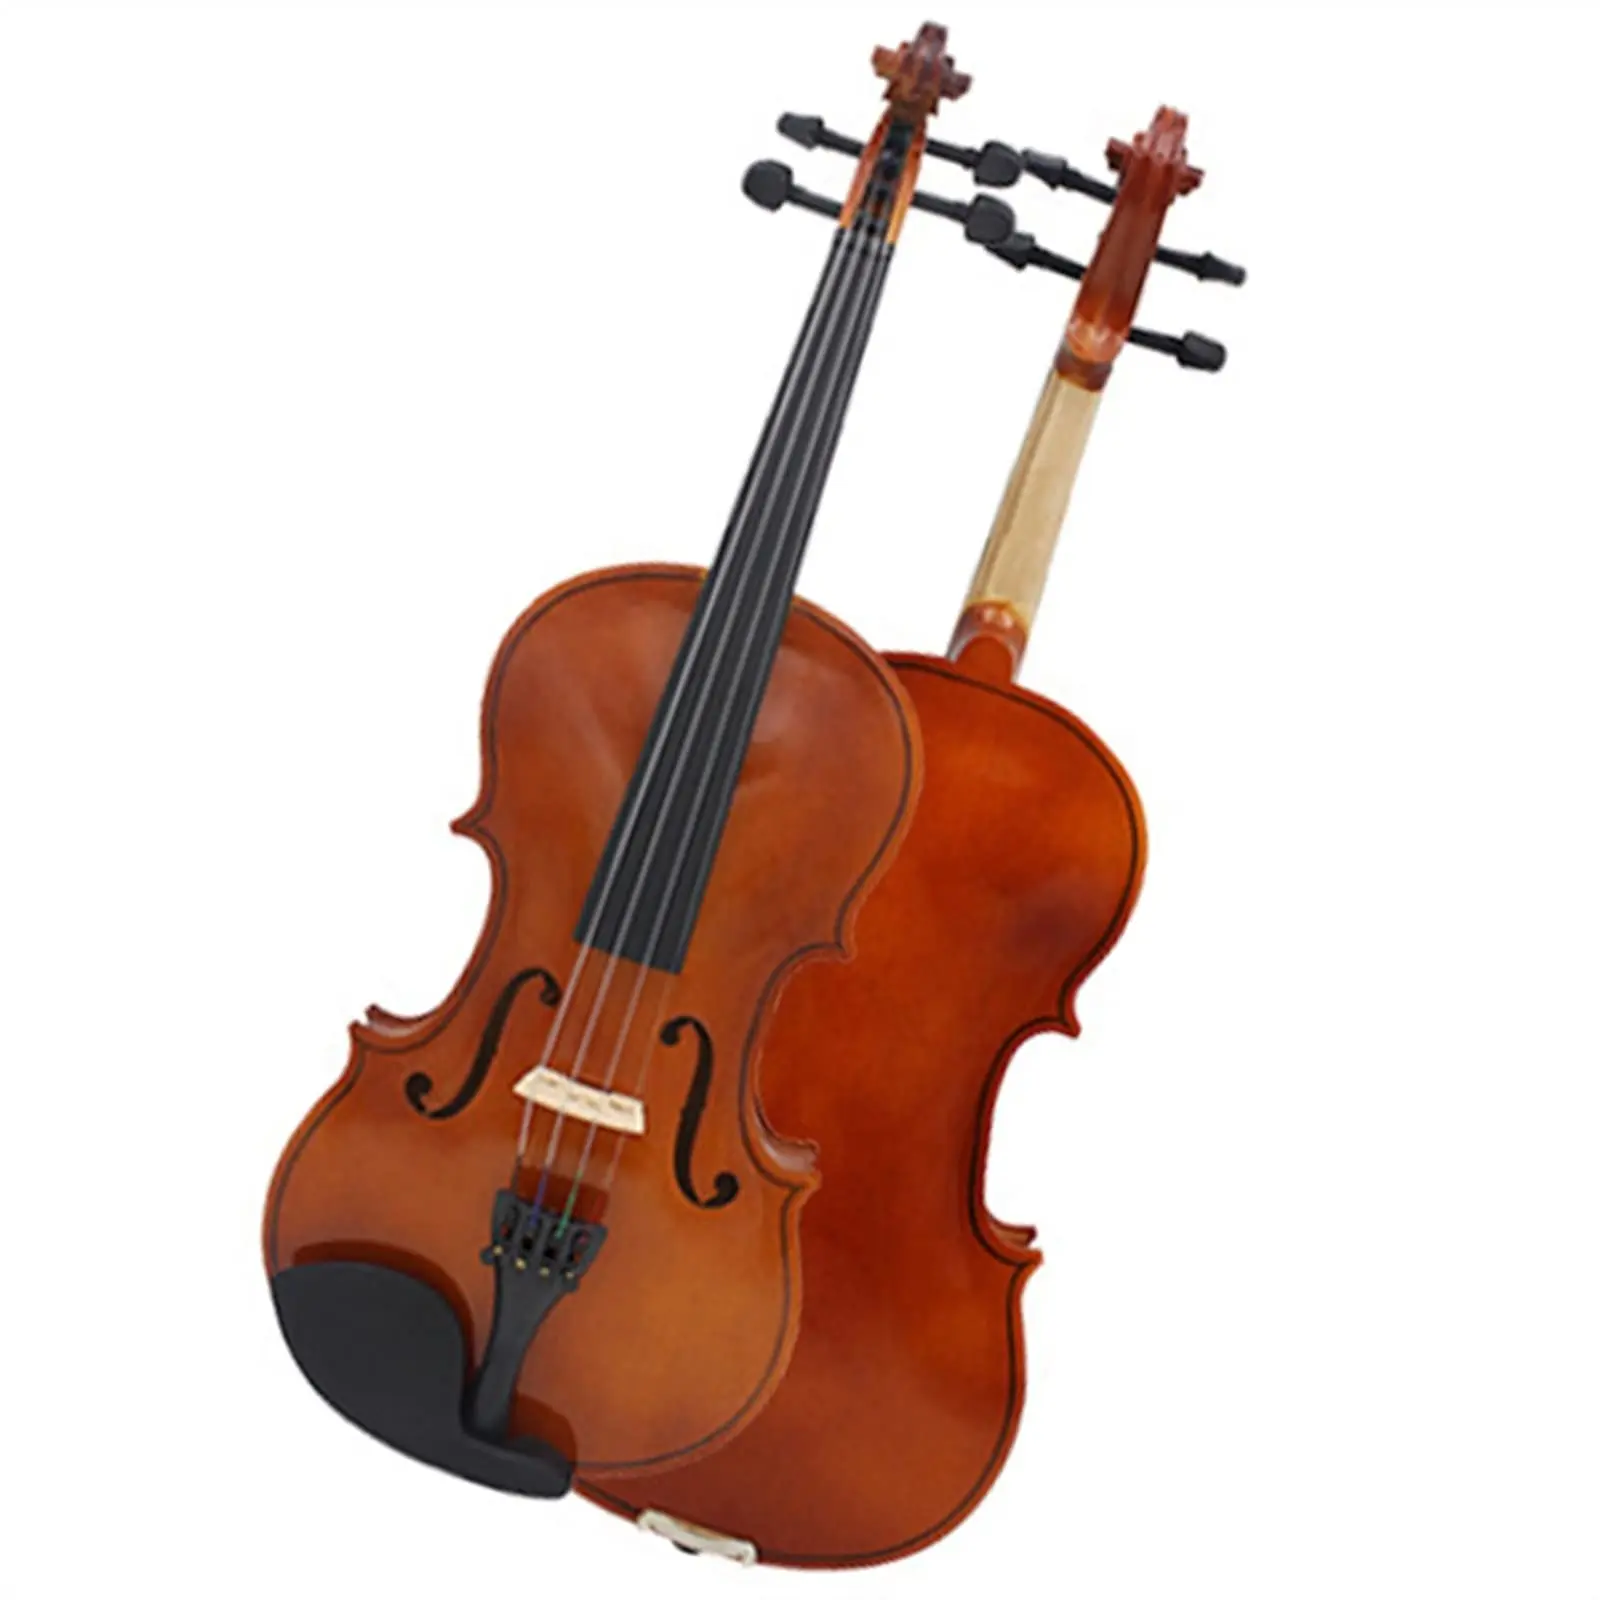 el violin es un instrumento de aire - Cuáles son los instrumentos musicales de viento